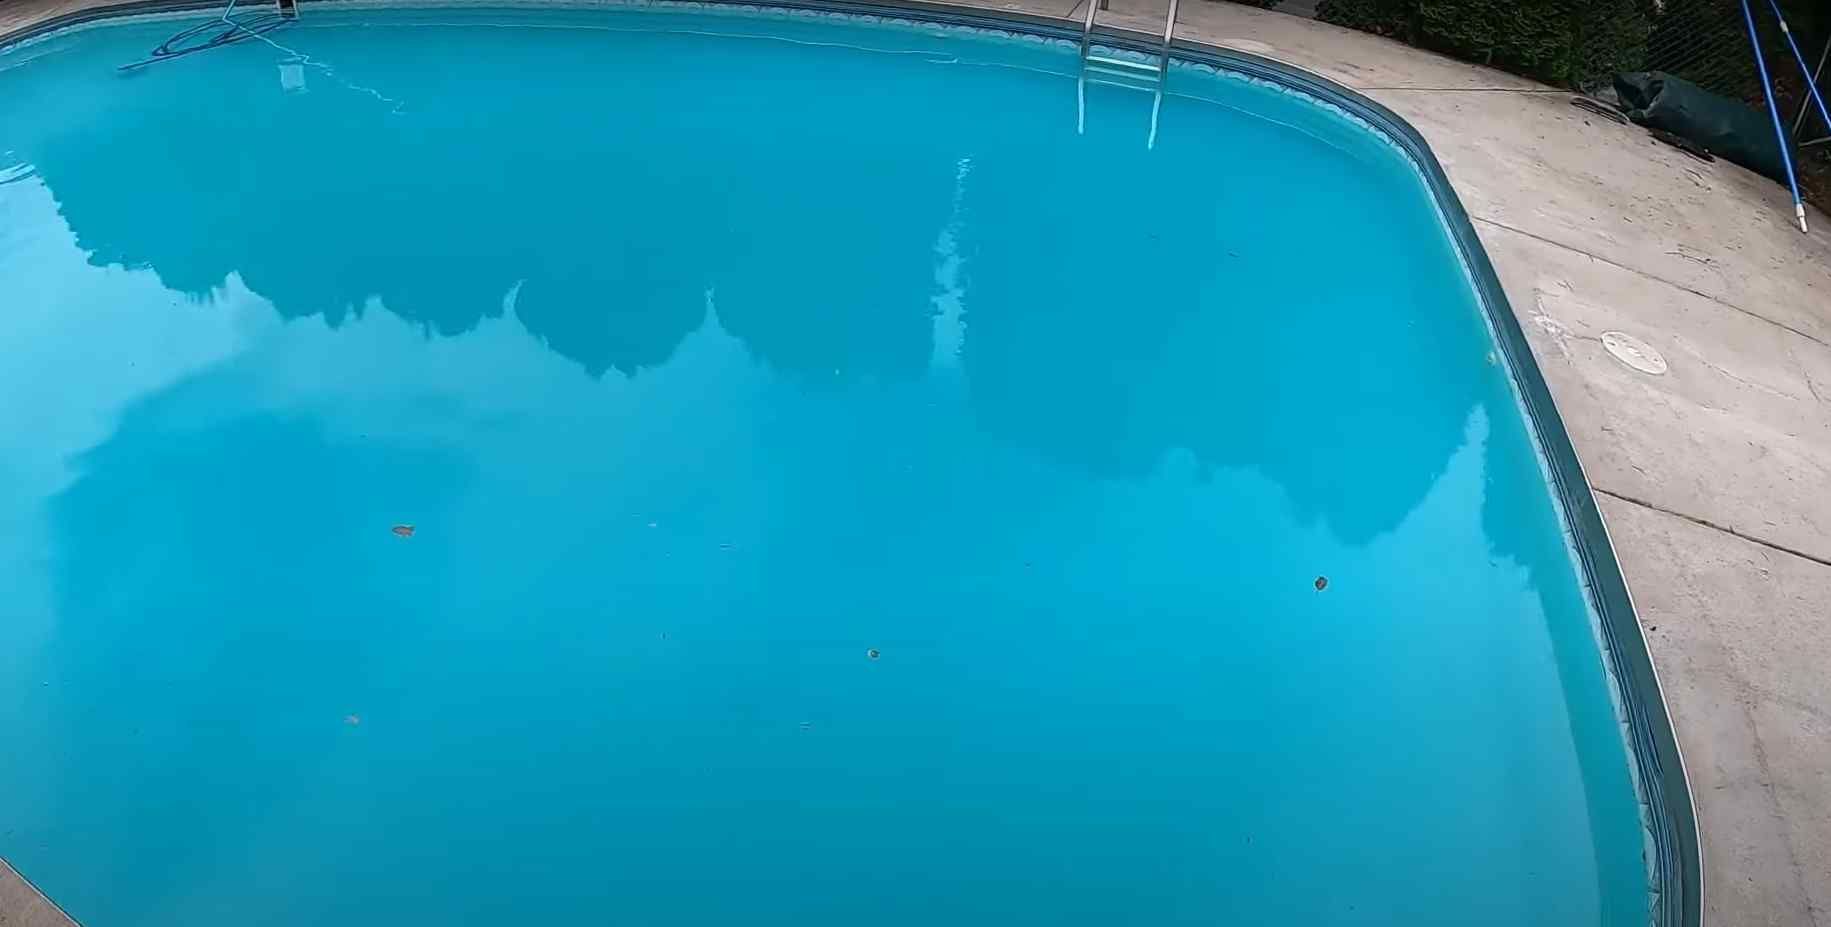 Clean blue pool